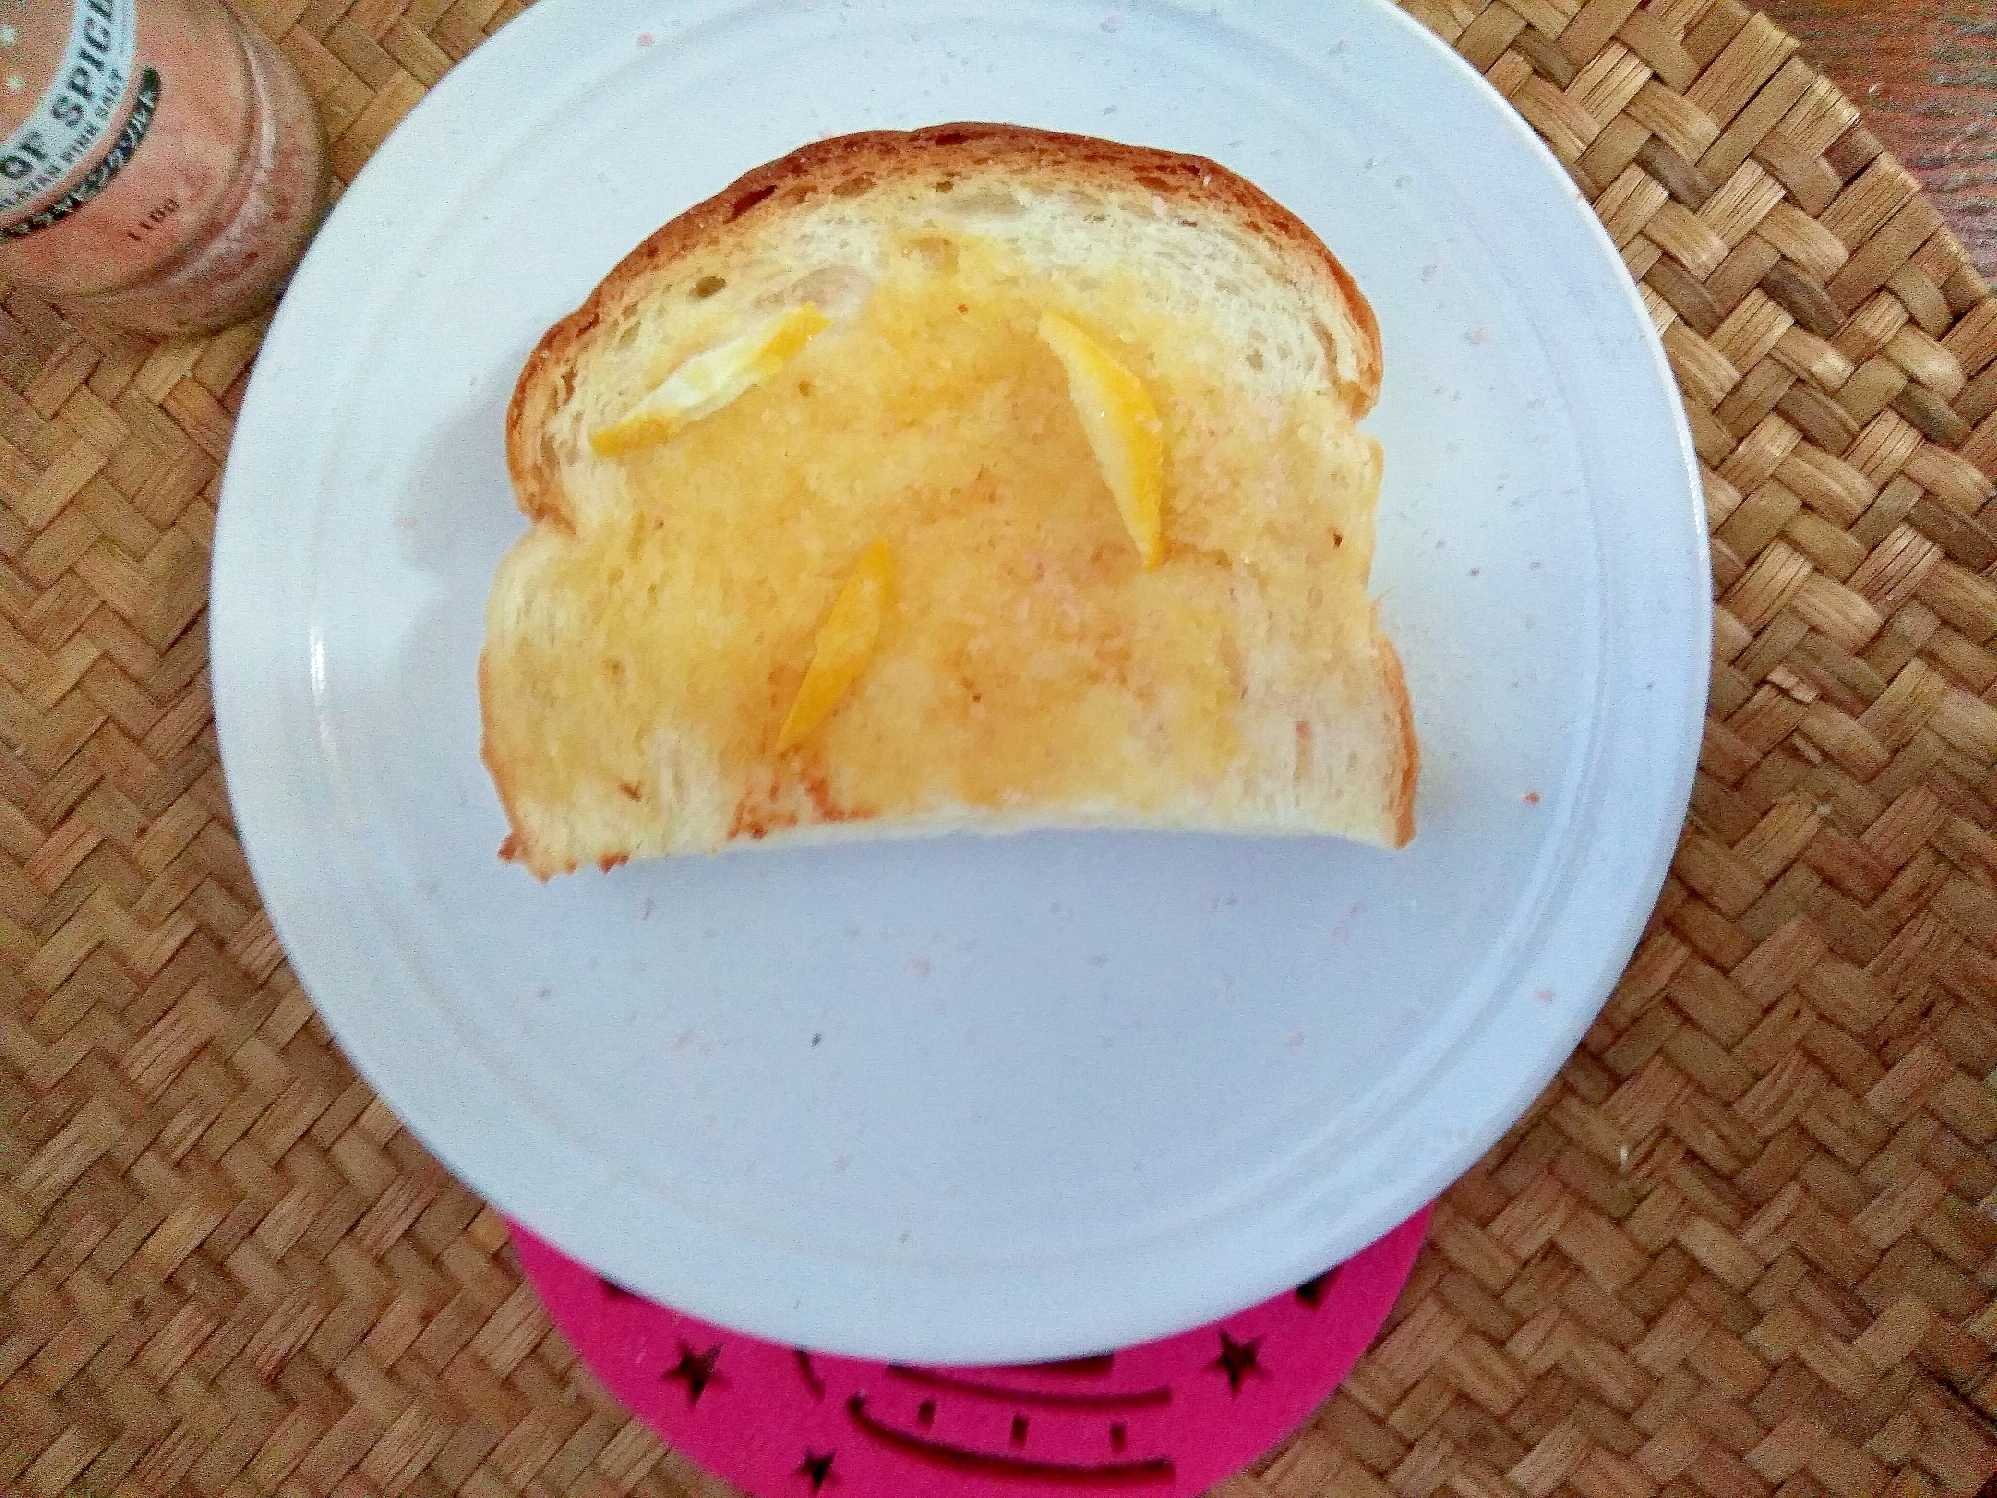 朝食♪さわやかレモン塩トースト